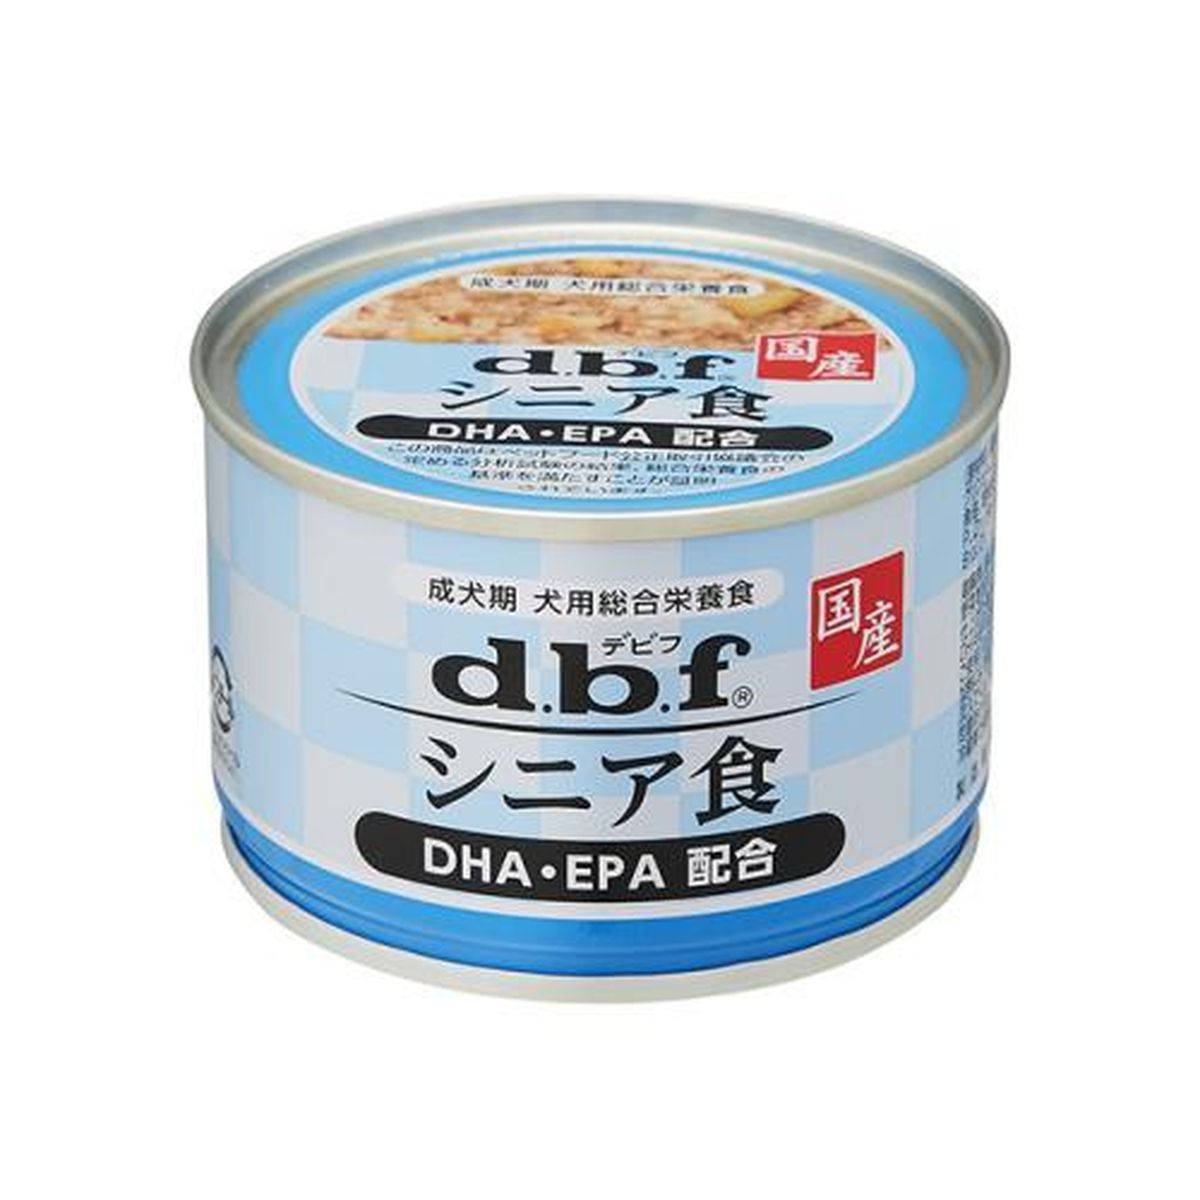 シニア食 DHA・EPA配合150g×24袋